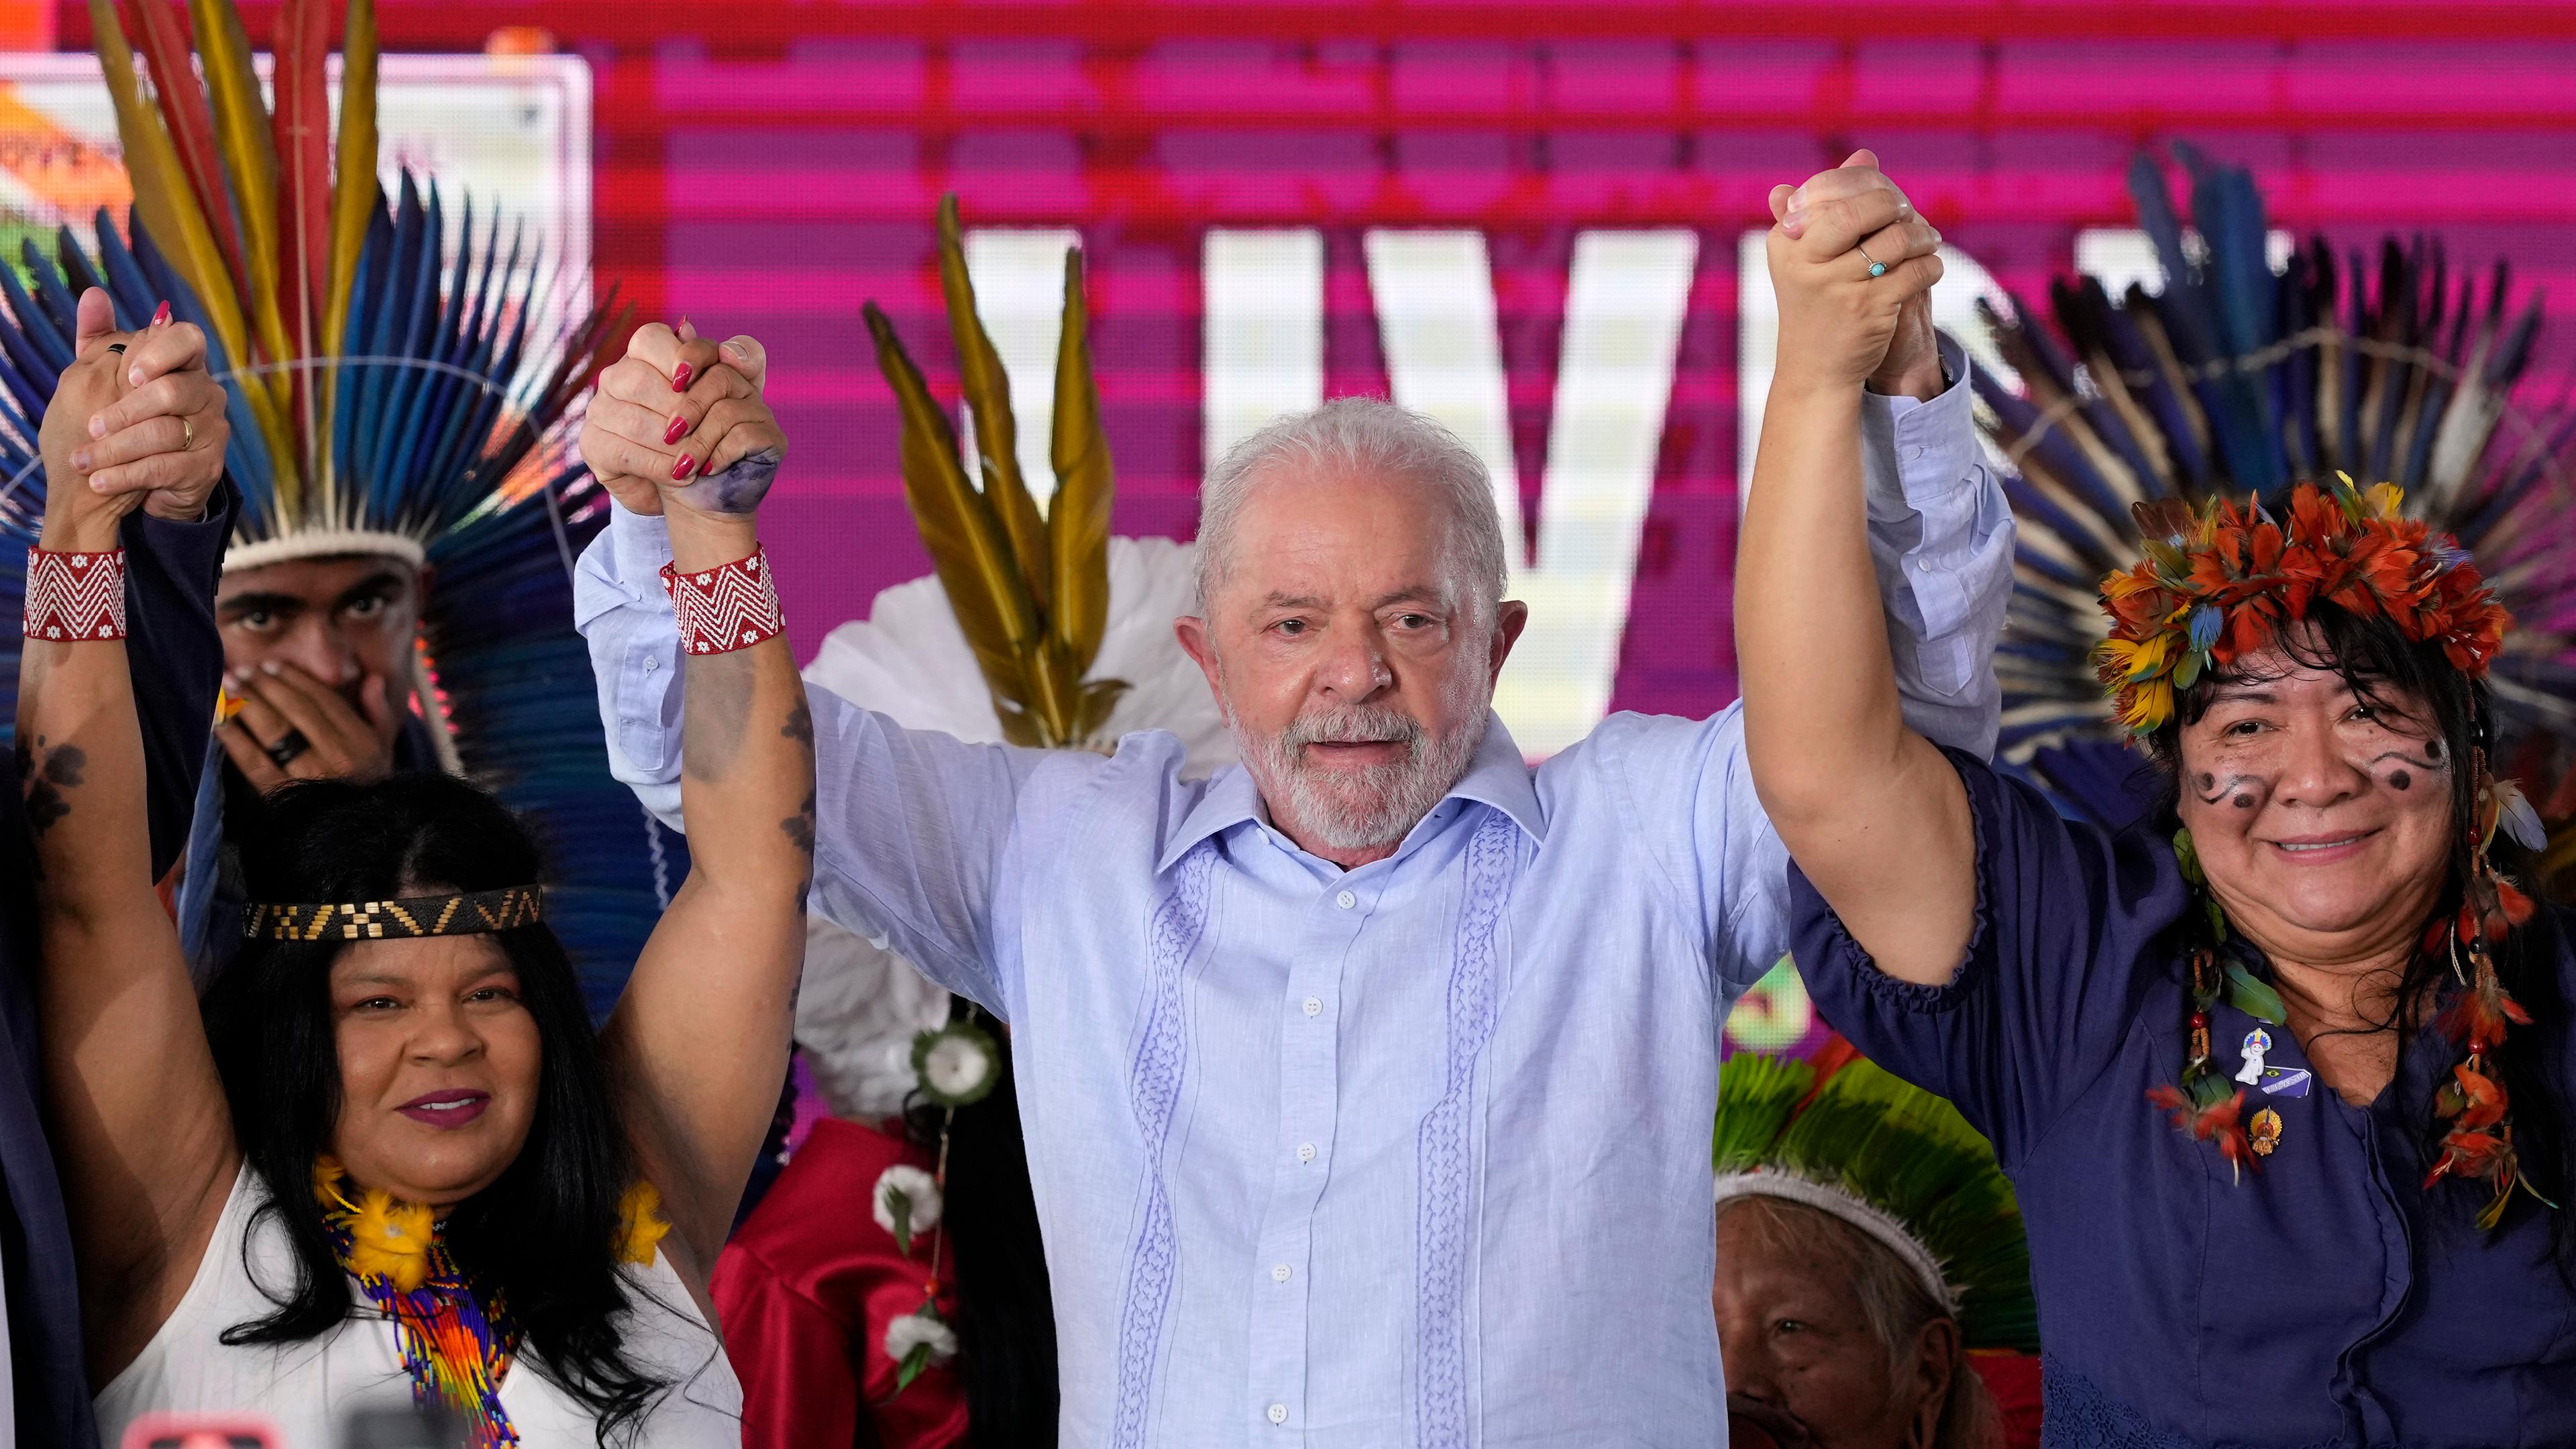 Brasiliens Präsident Luiz Inacio Lula da Silva mit zwei indigenen Frauen links und rechts von ihm. Sie feiern die Erschaffung sechs neuer Schutzgebiete für indigene Einwohner